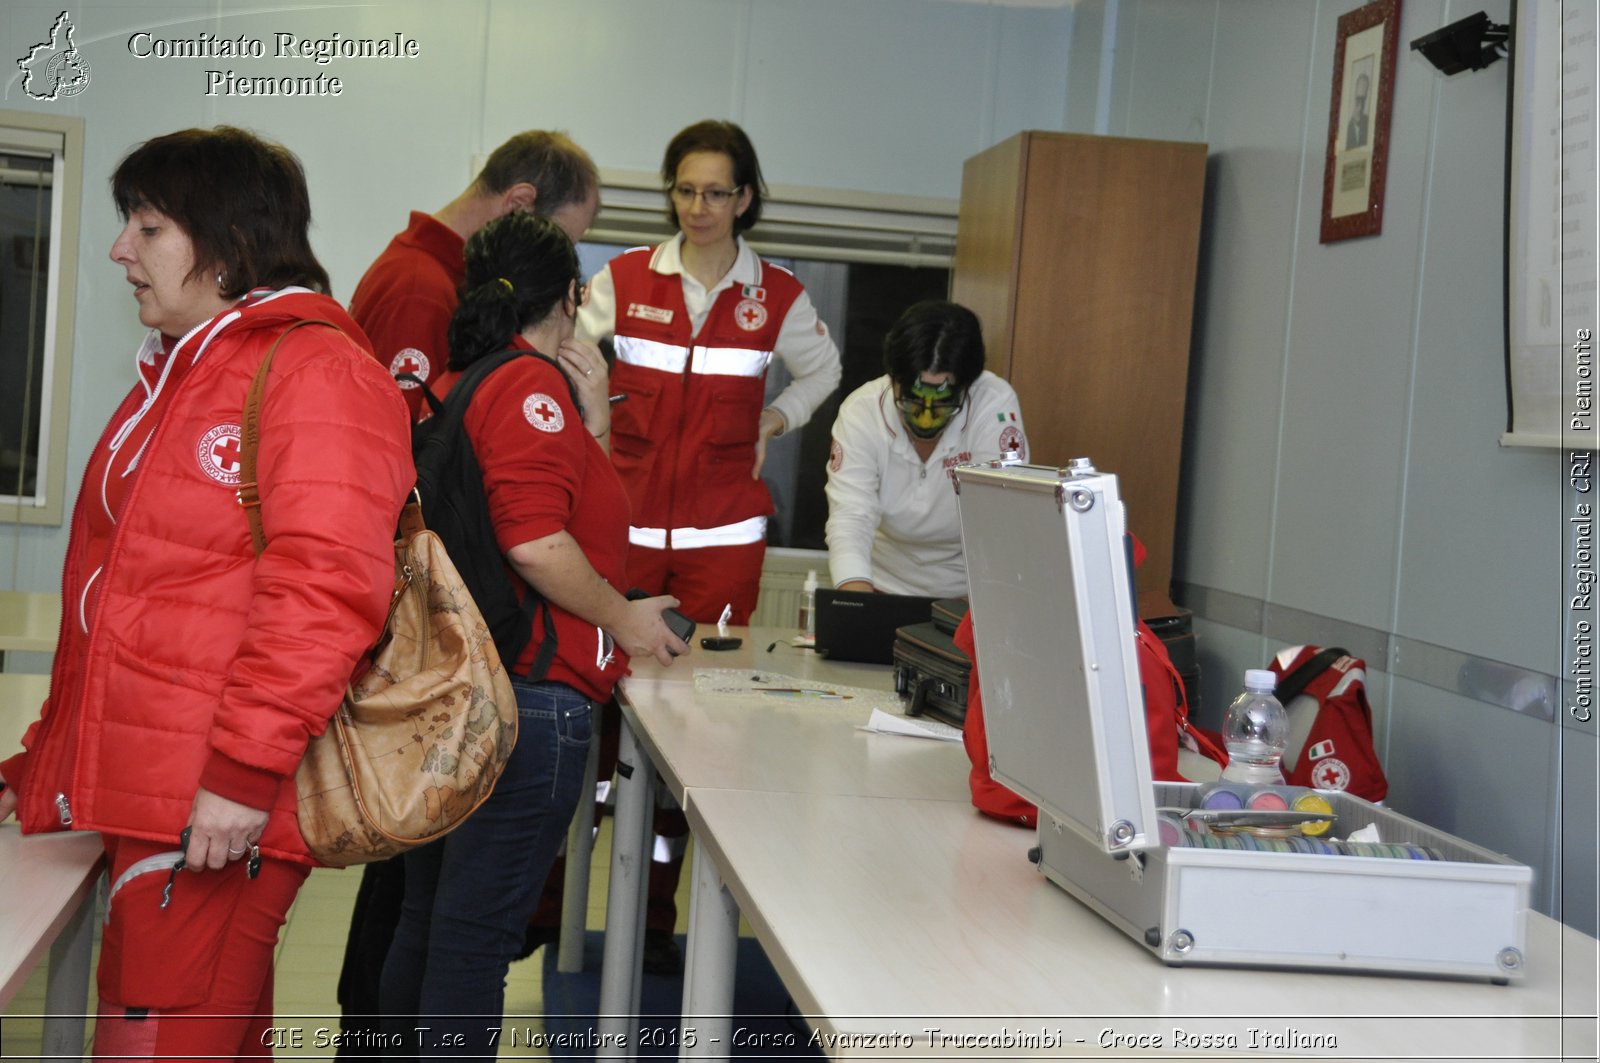 CIE Settimo T.se 7 Novembre 2015 - Corso Avanzato Truccabimbi - Croce Rossa Italiana- Comitato Regionale del Piemonte